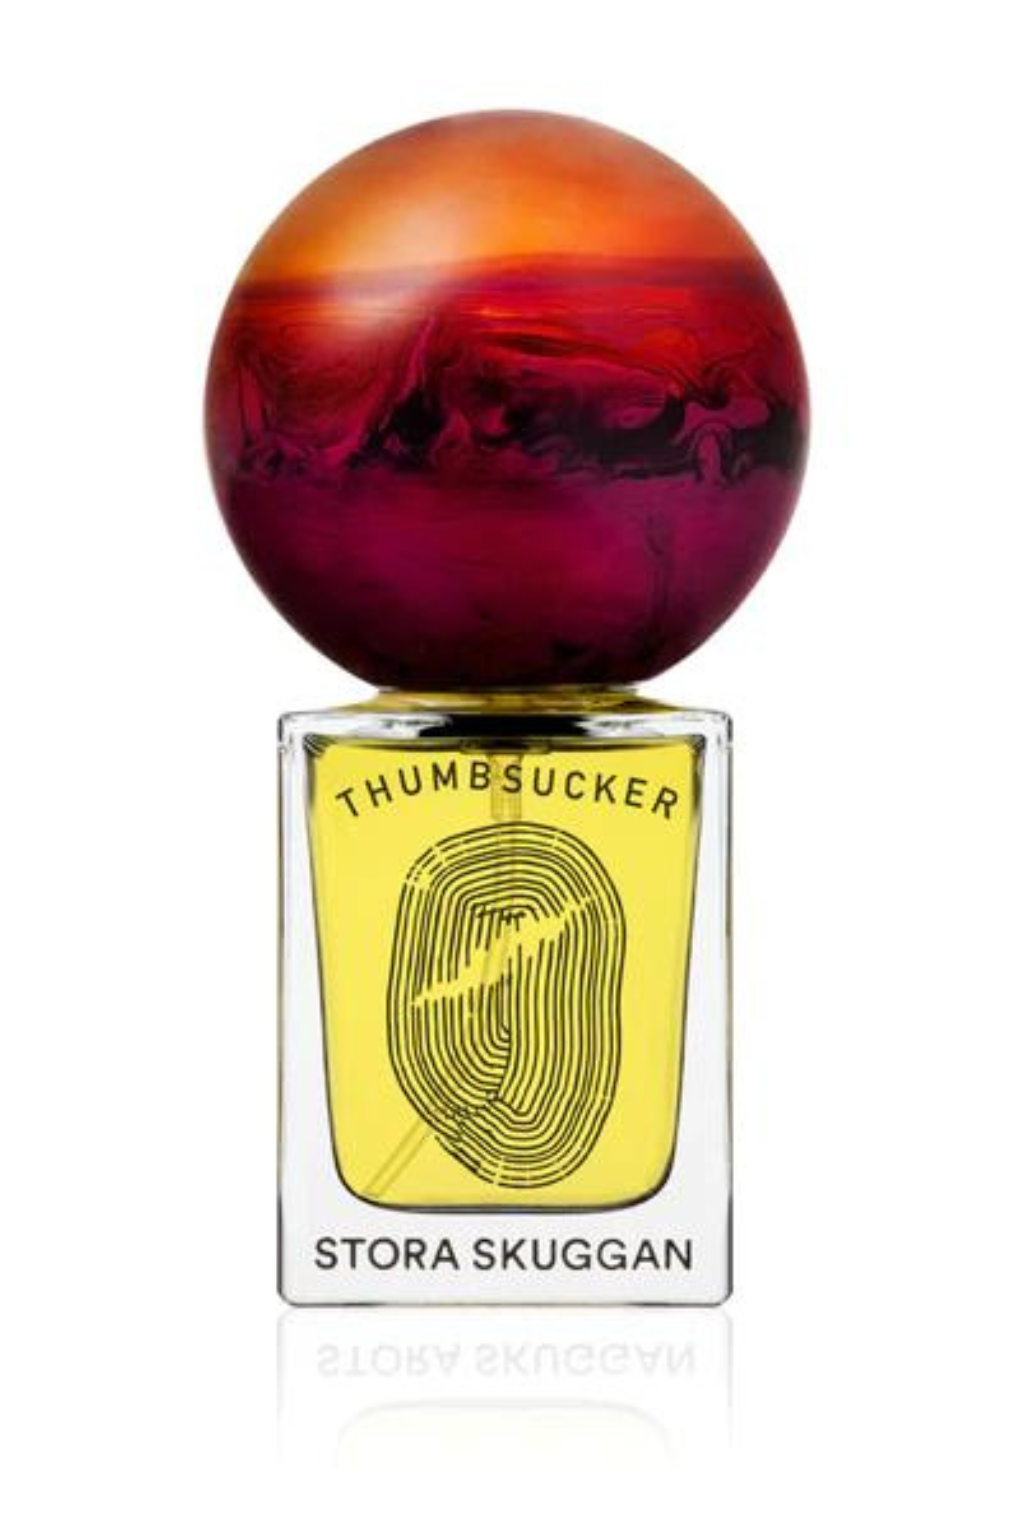 Stora Skuggan Thumbsucker perfume 30 ml-Idun-St. Paul